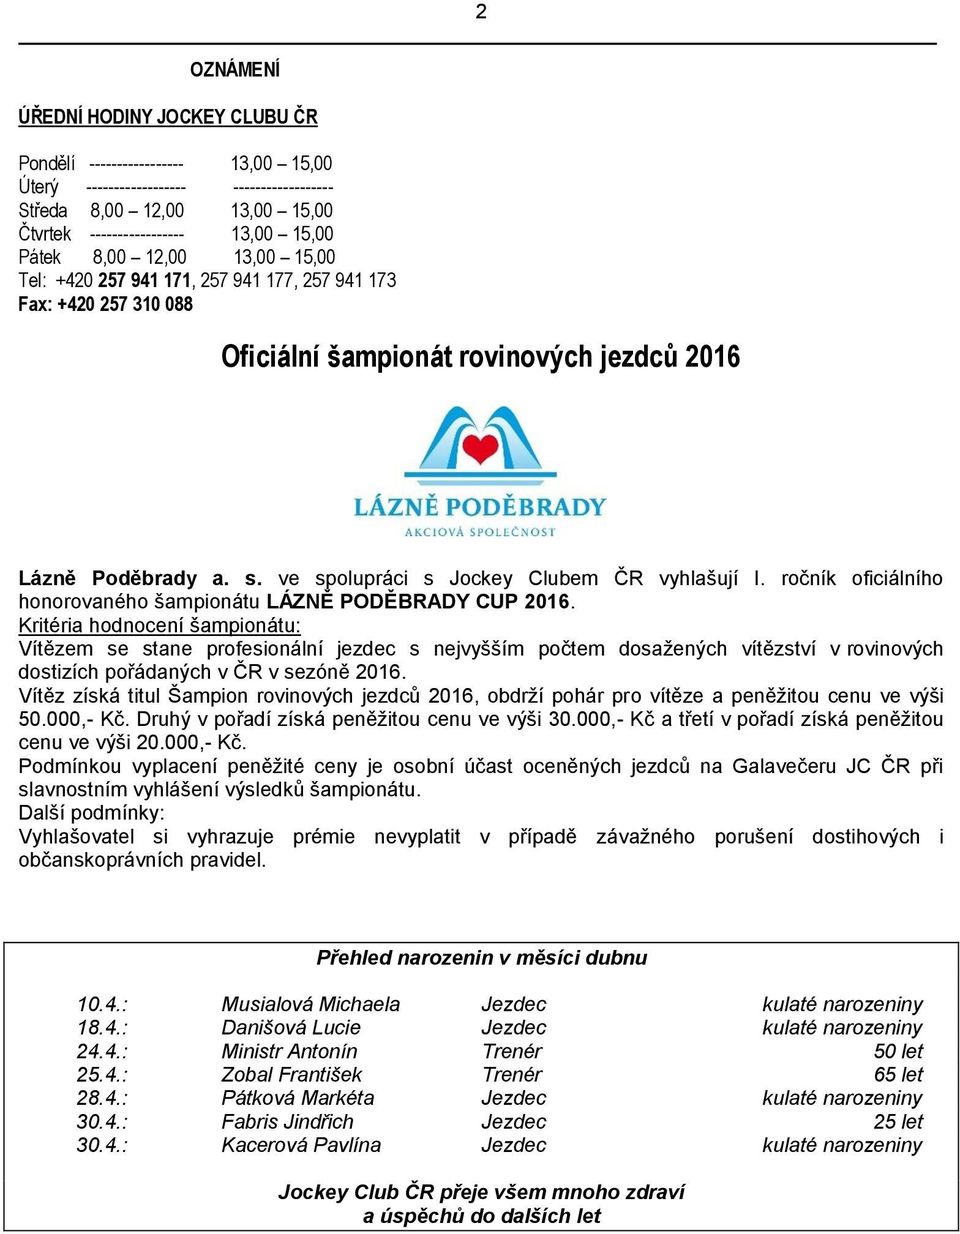 ve spolupráci s Jockey Clubem ČR vyhlašují I. ročník oficiálního honorovaného šampionátu LÁZNĚ PODĚBRADY CUP 2016.